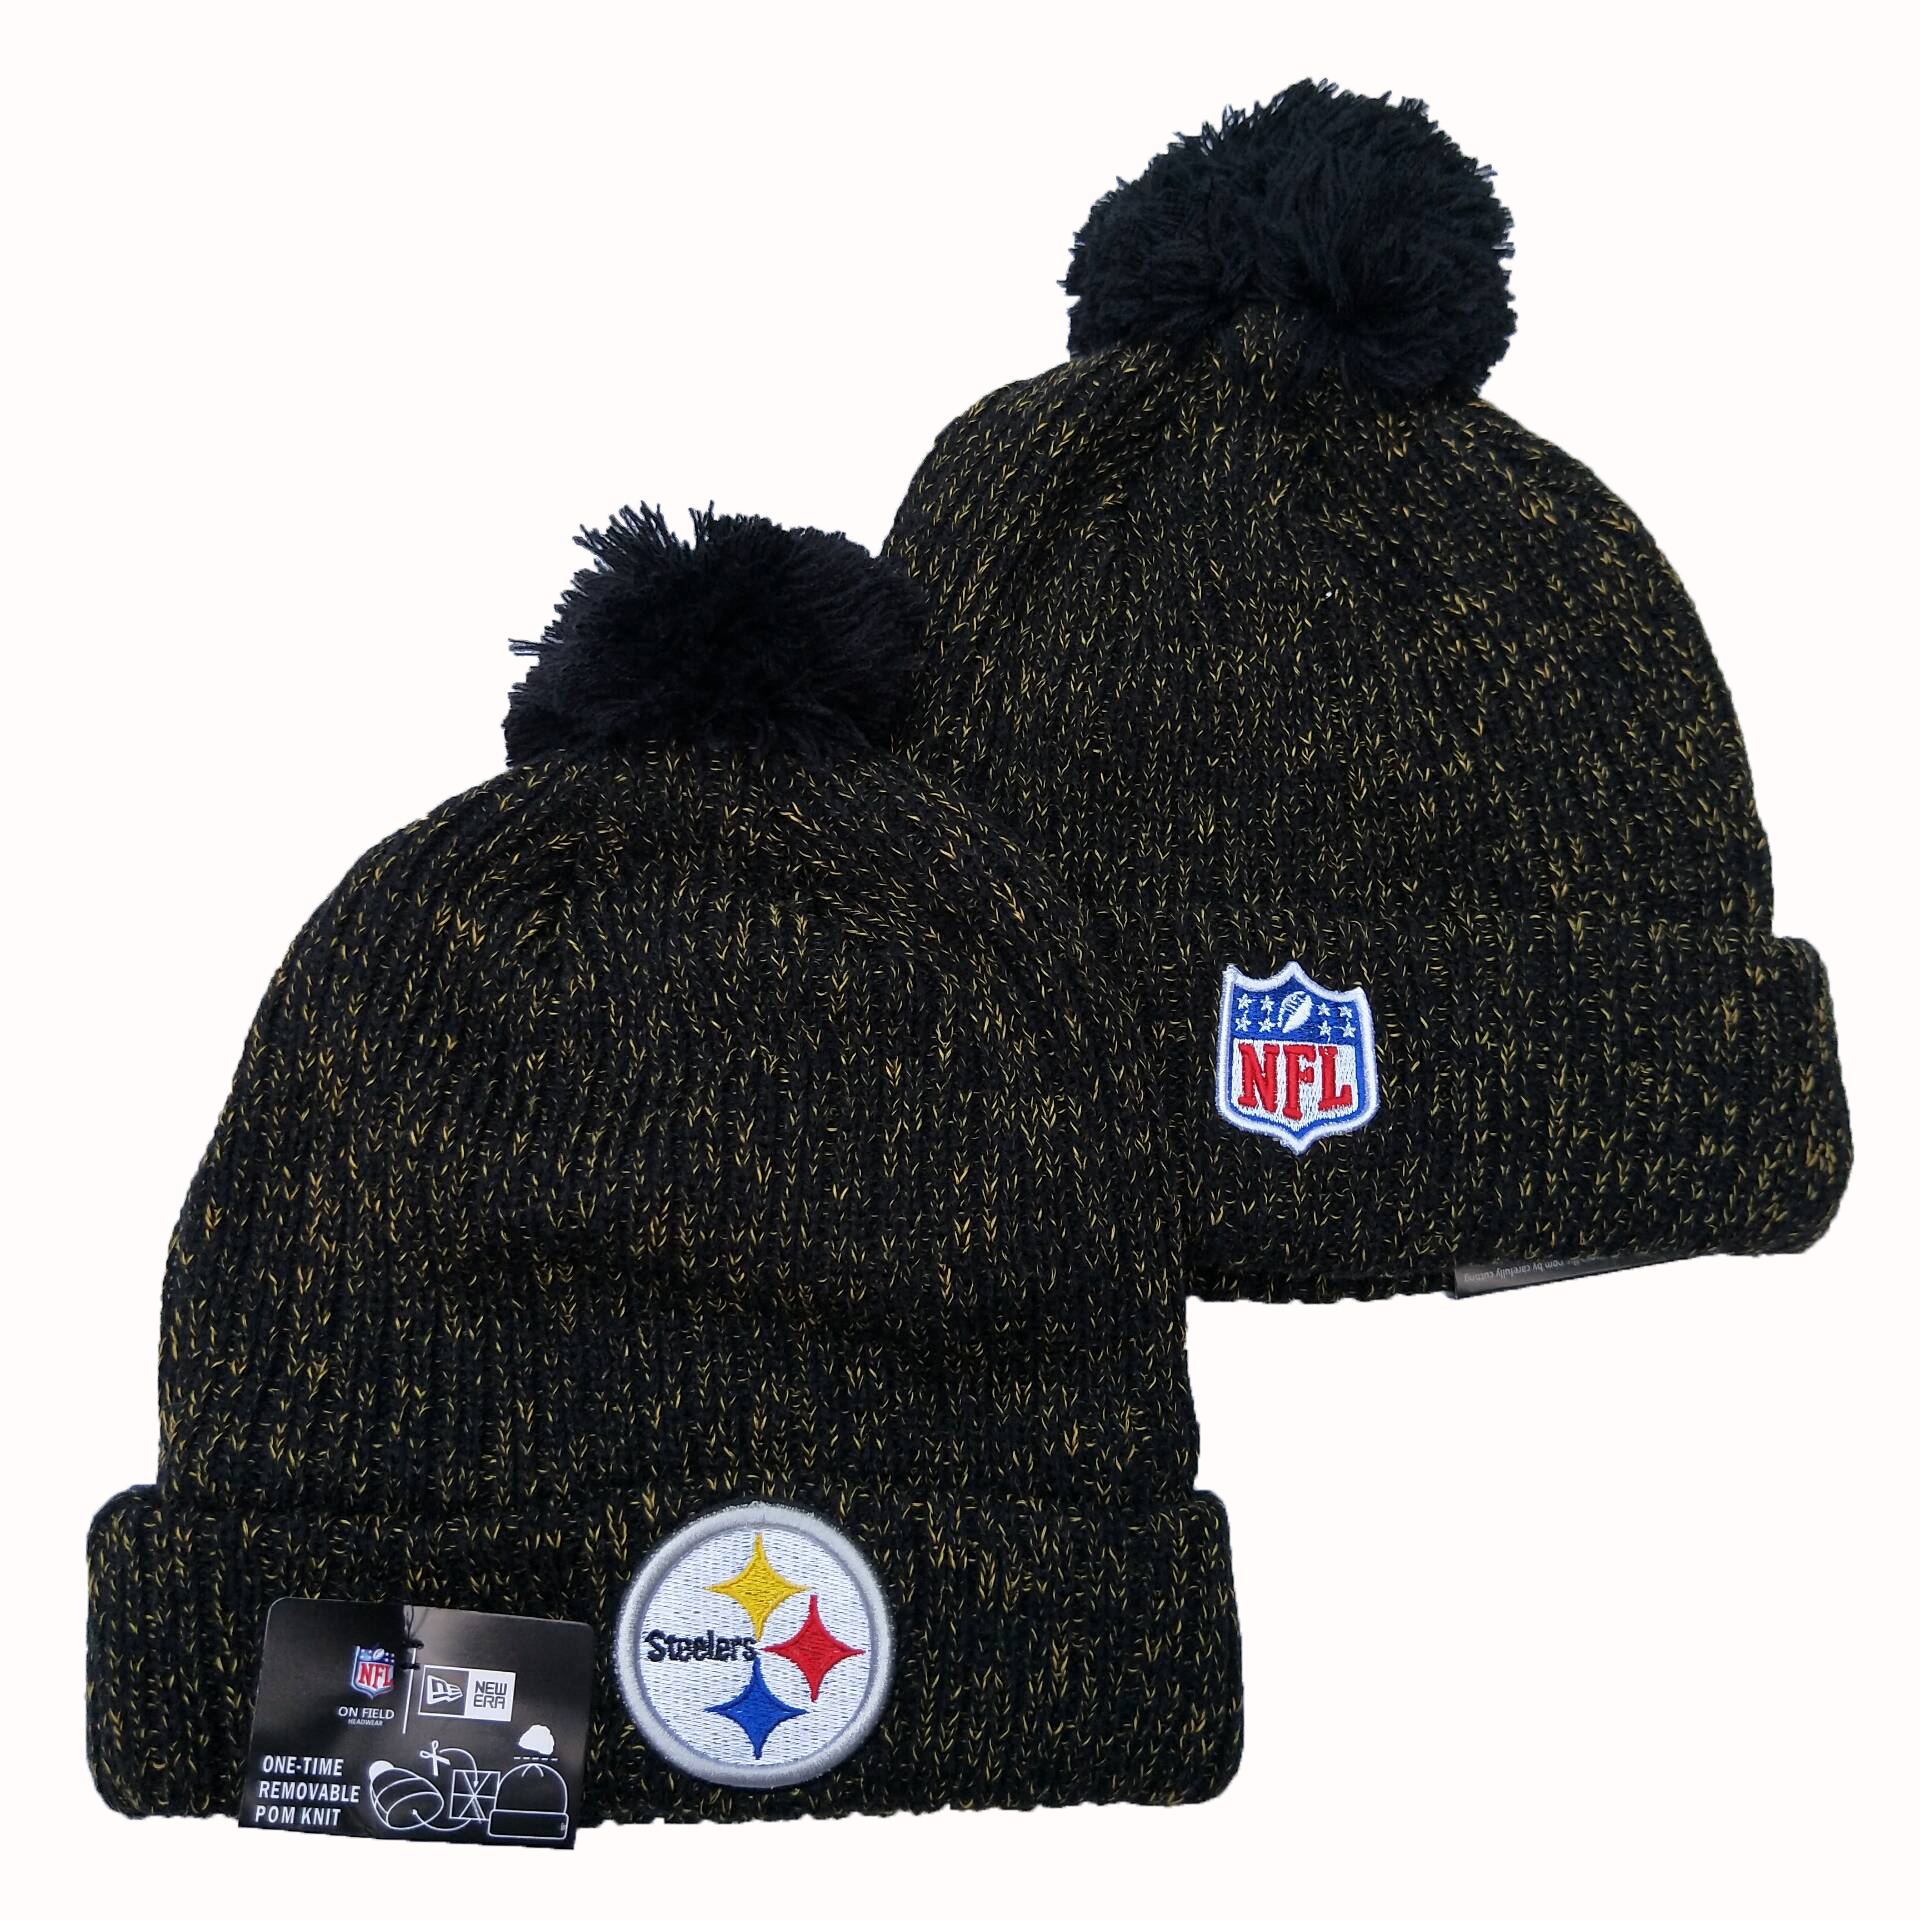 Steelers Team Logo Black Cuffed Pom Knit Hat YD